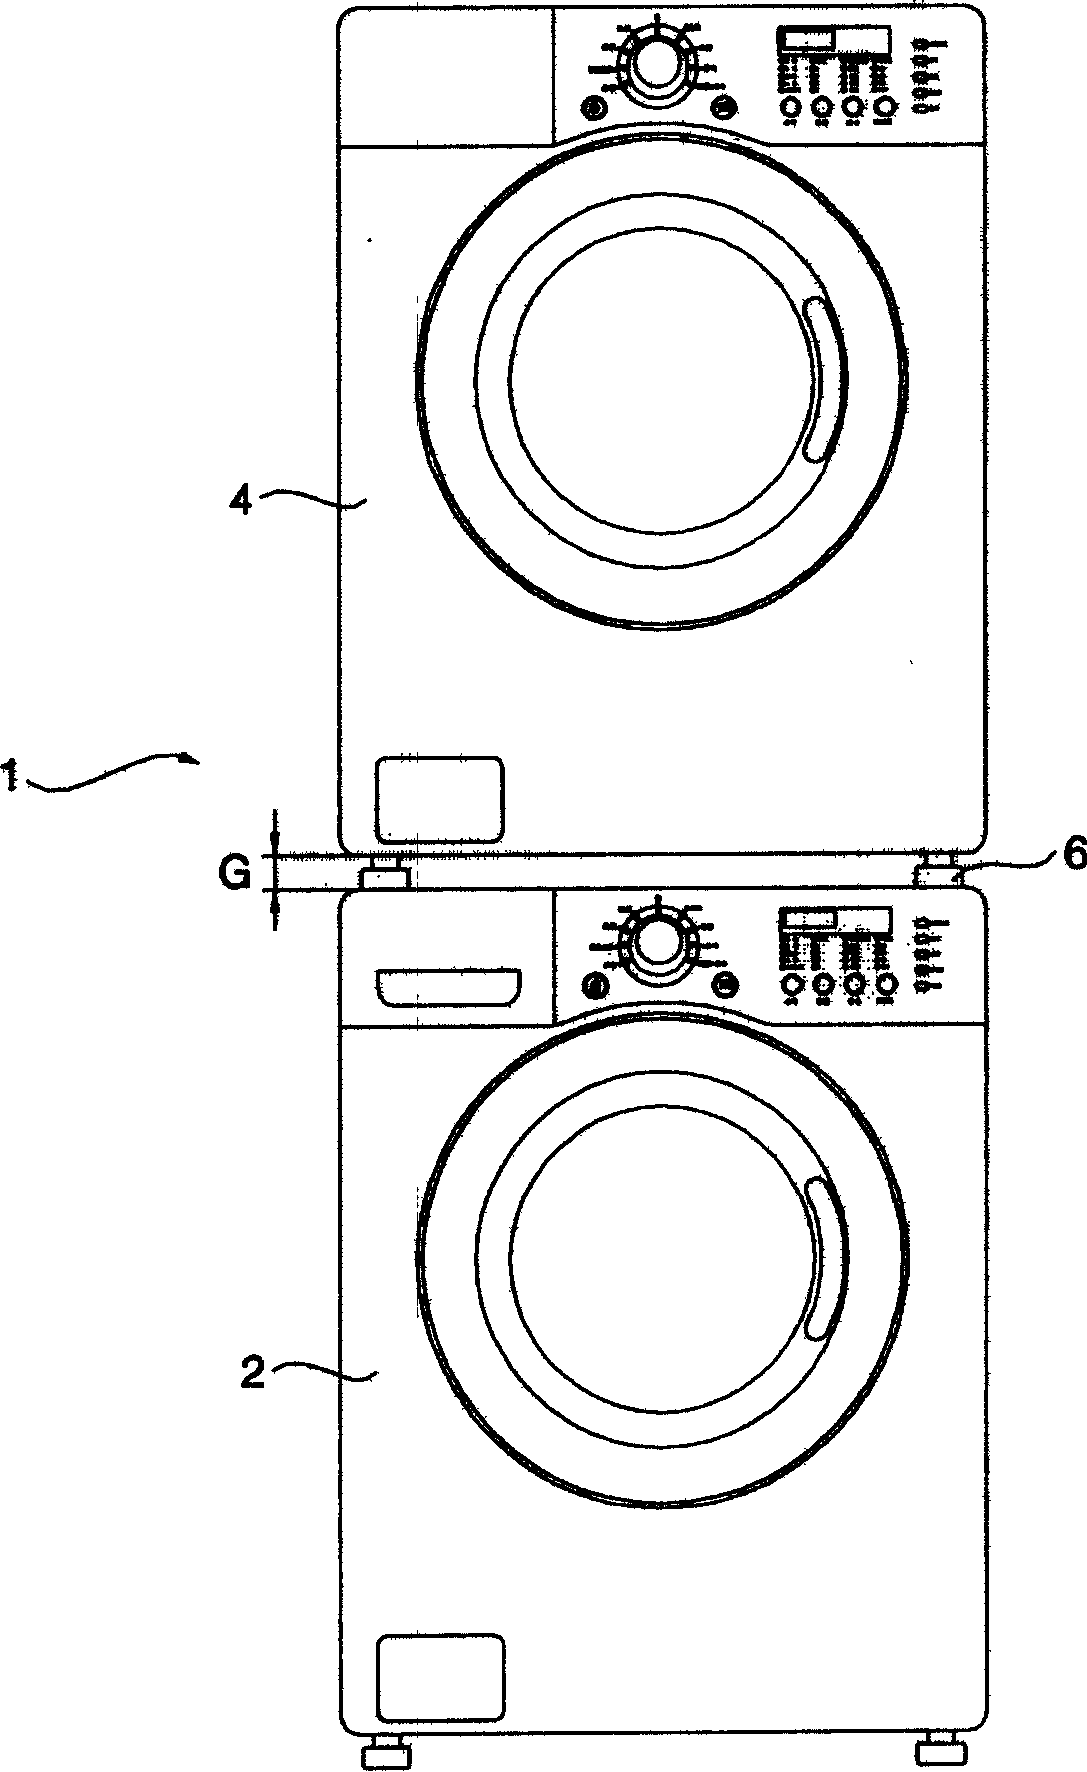 Washing apparatus